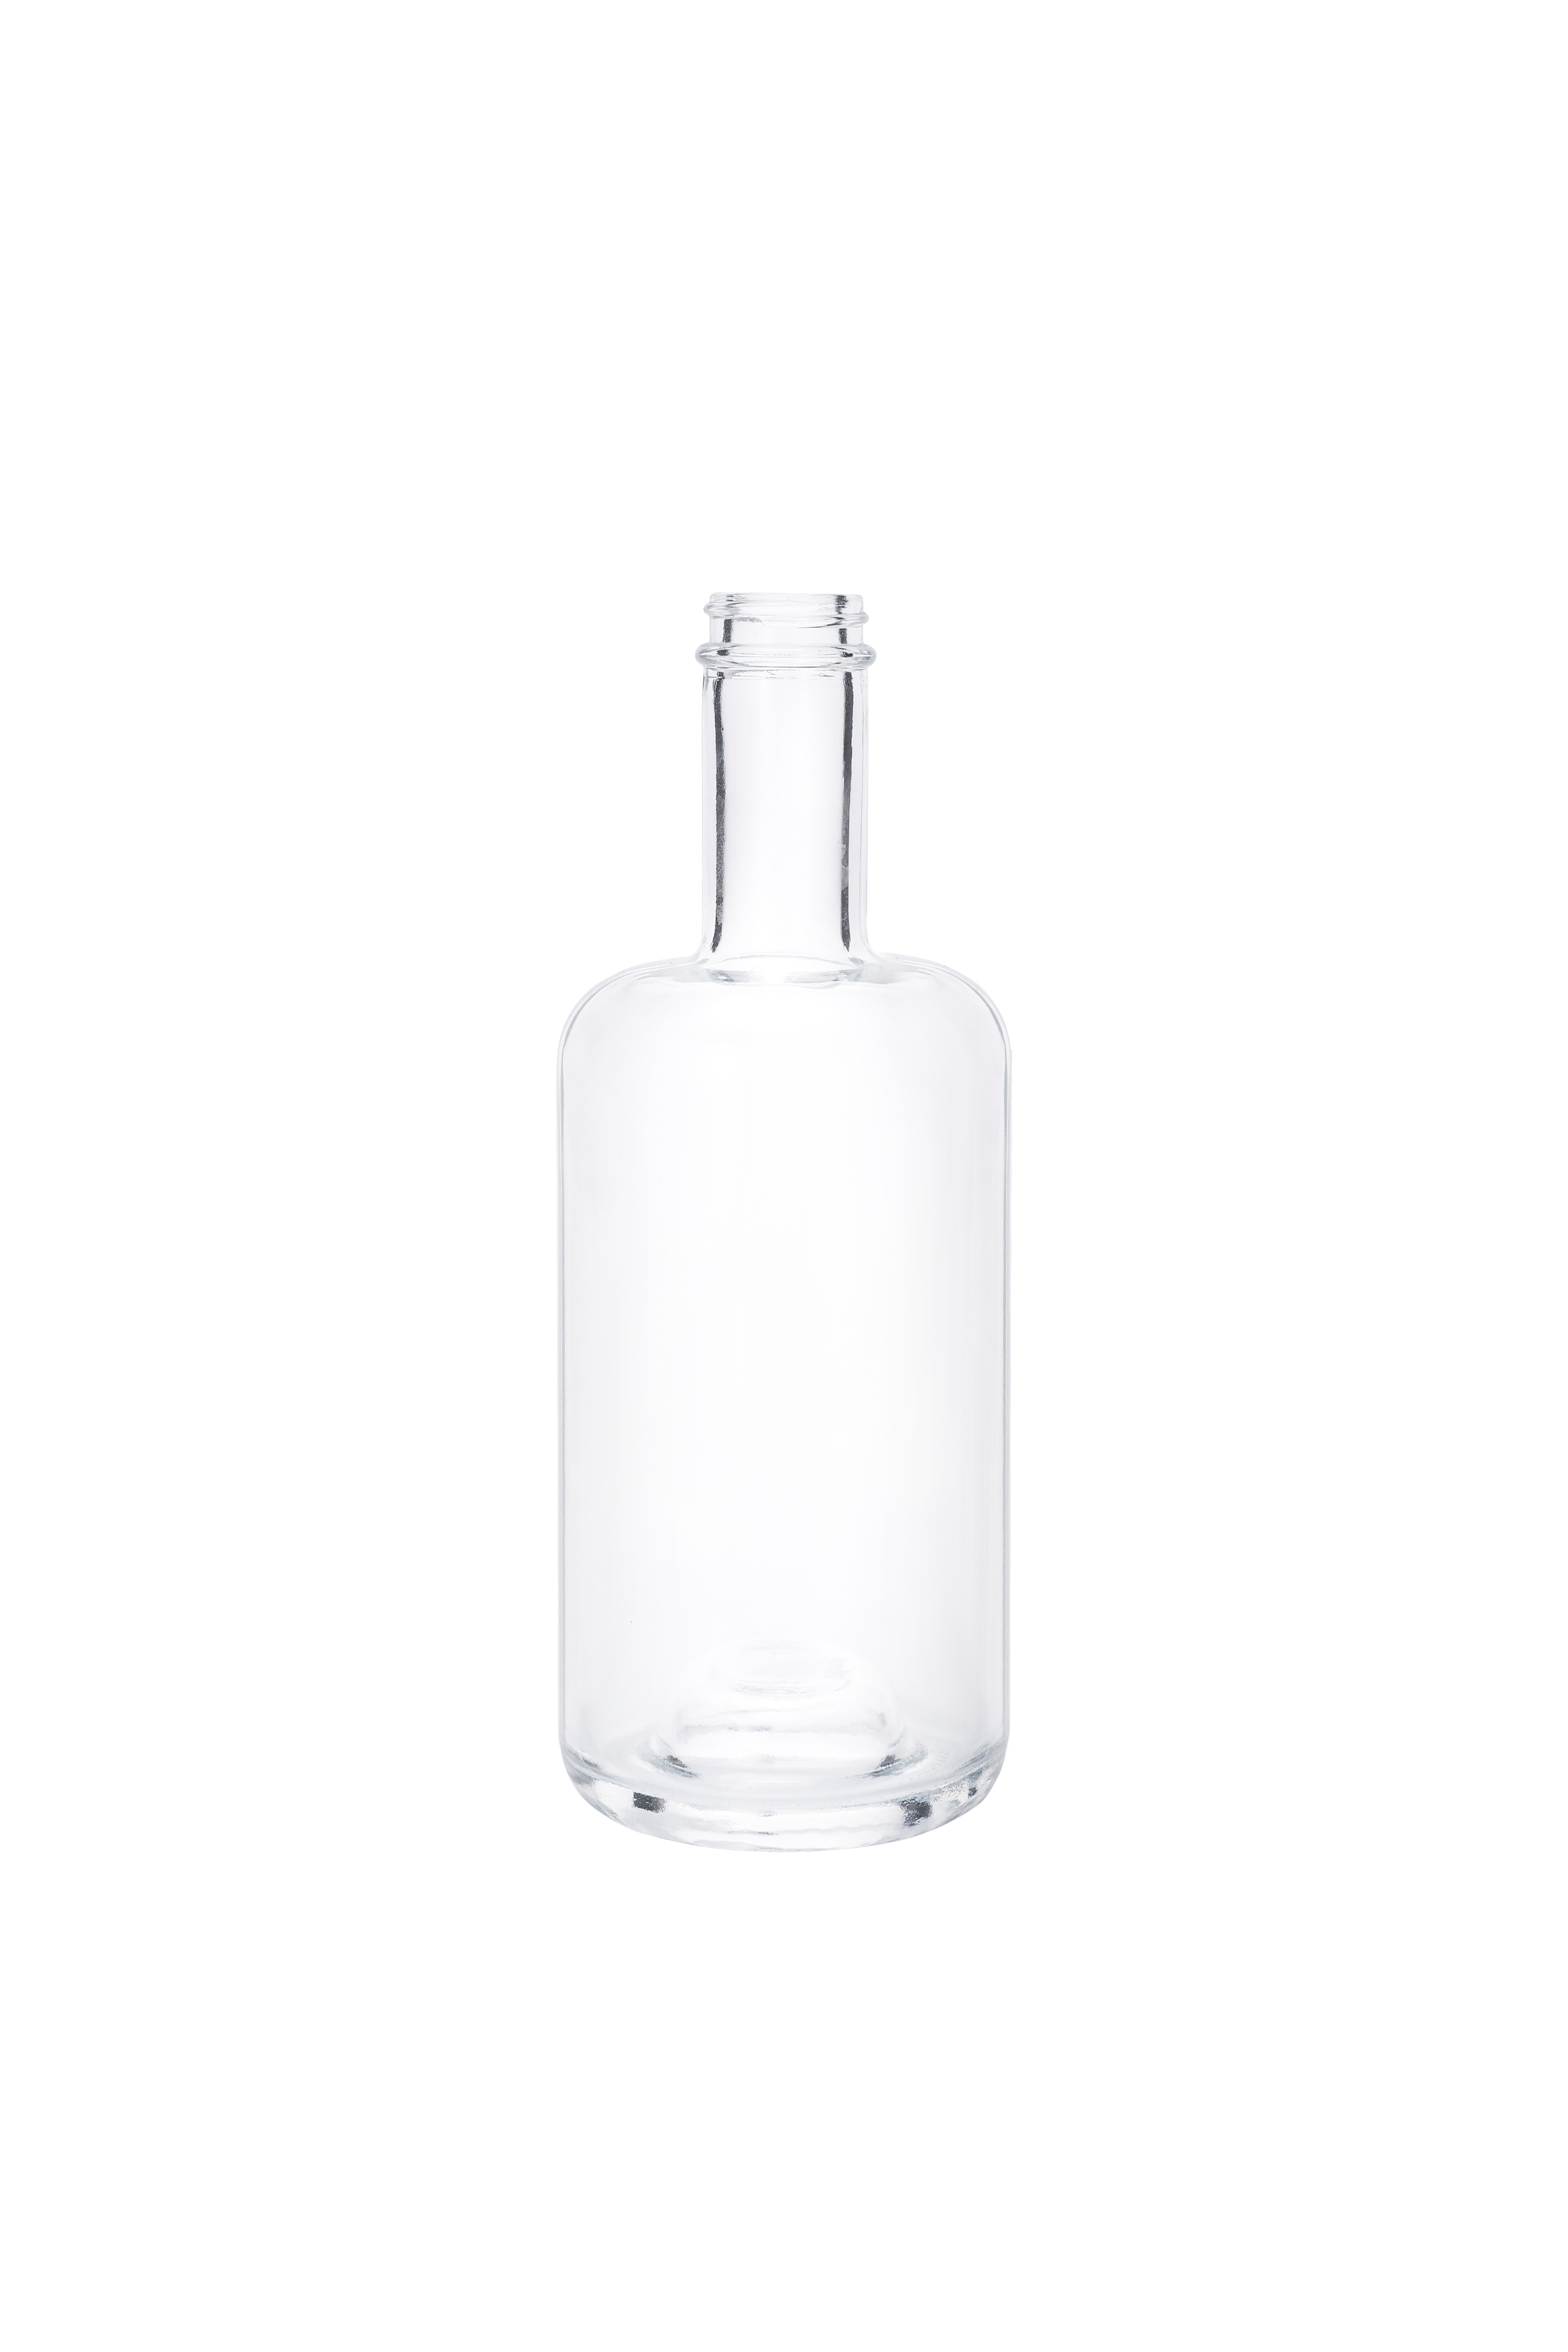 Classic Clear Glass Vodka Whisky Liquor Bottles